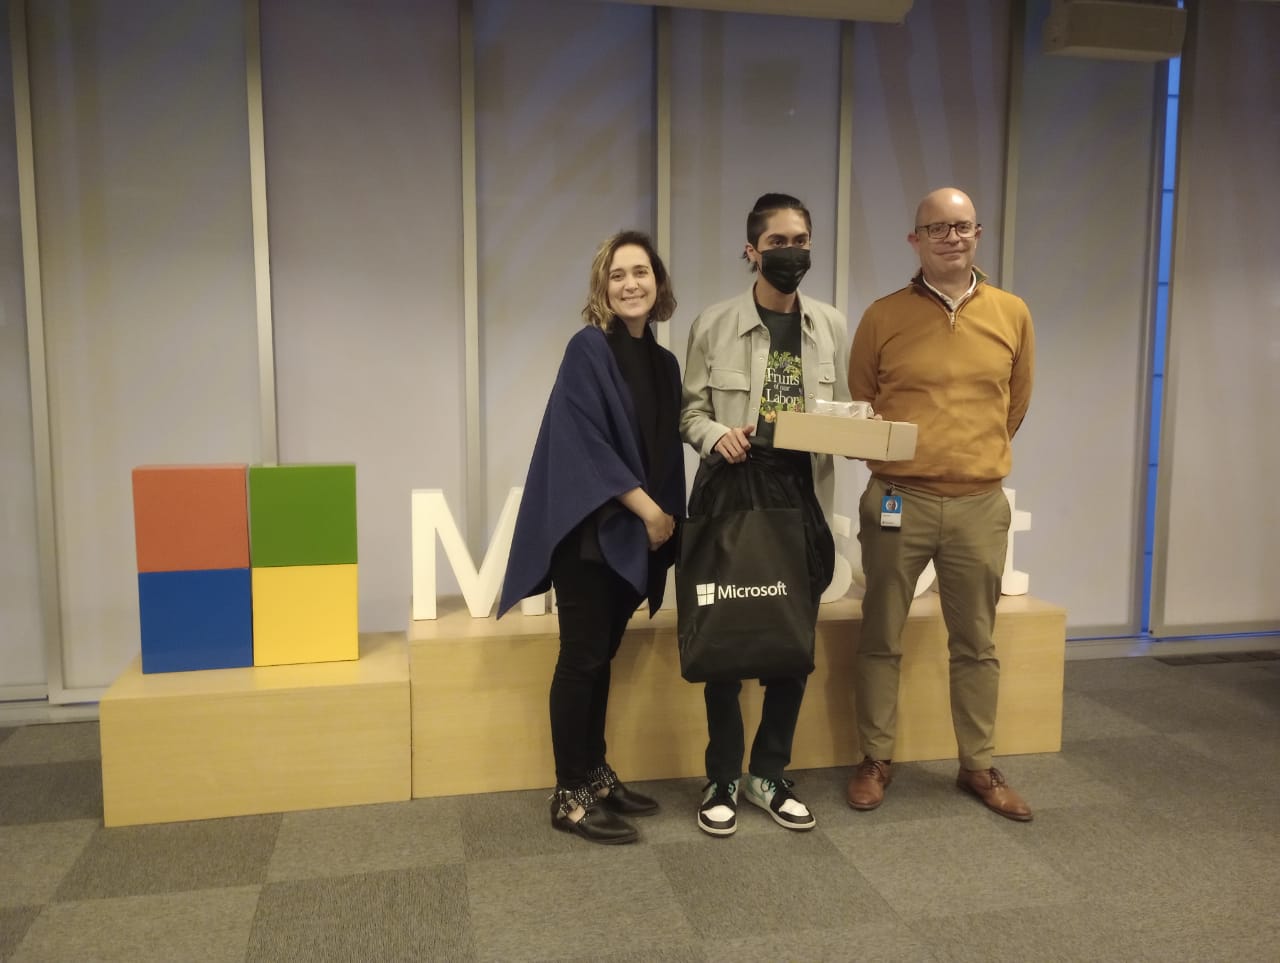 Estudiante peruano gana medalla de bronce en el campeonato mundial  Microsoft Office Specialist - News Center Latinoamérica